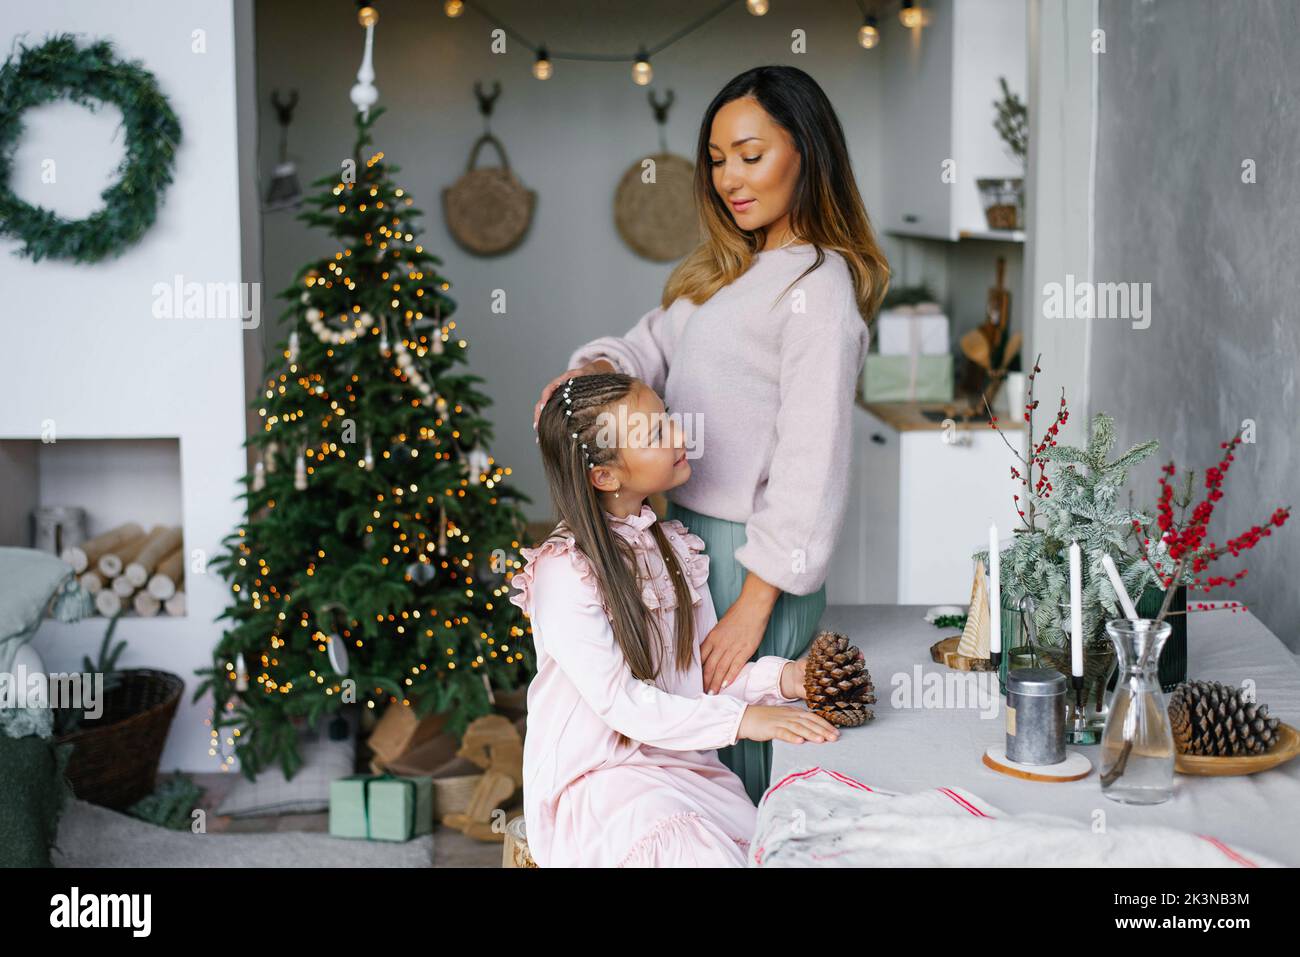 La chica está sentada en una mesa en el salón decorado para la Navidad Foto de stock